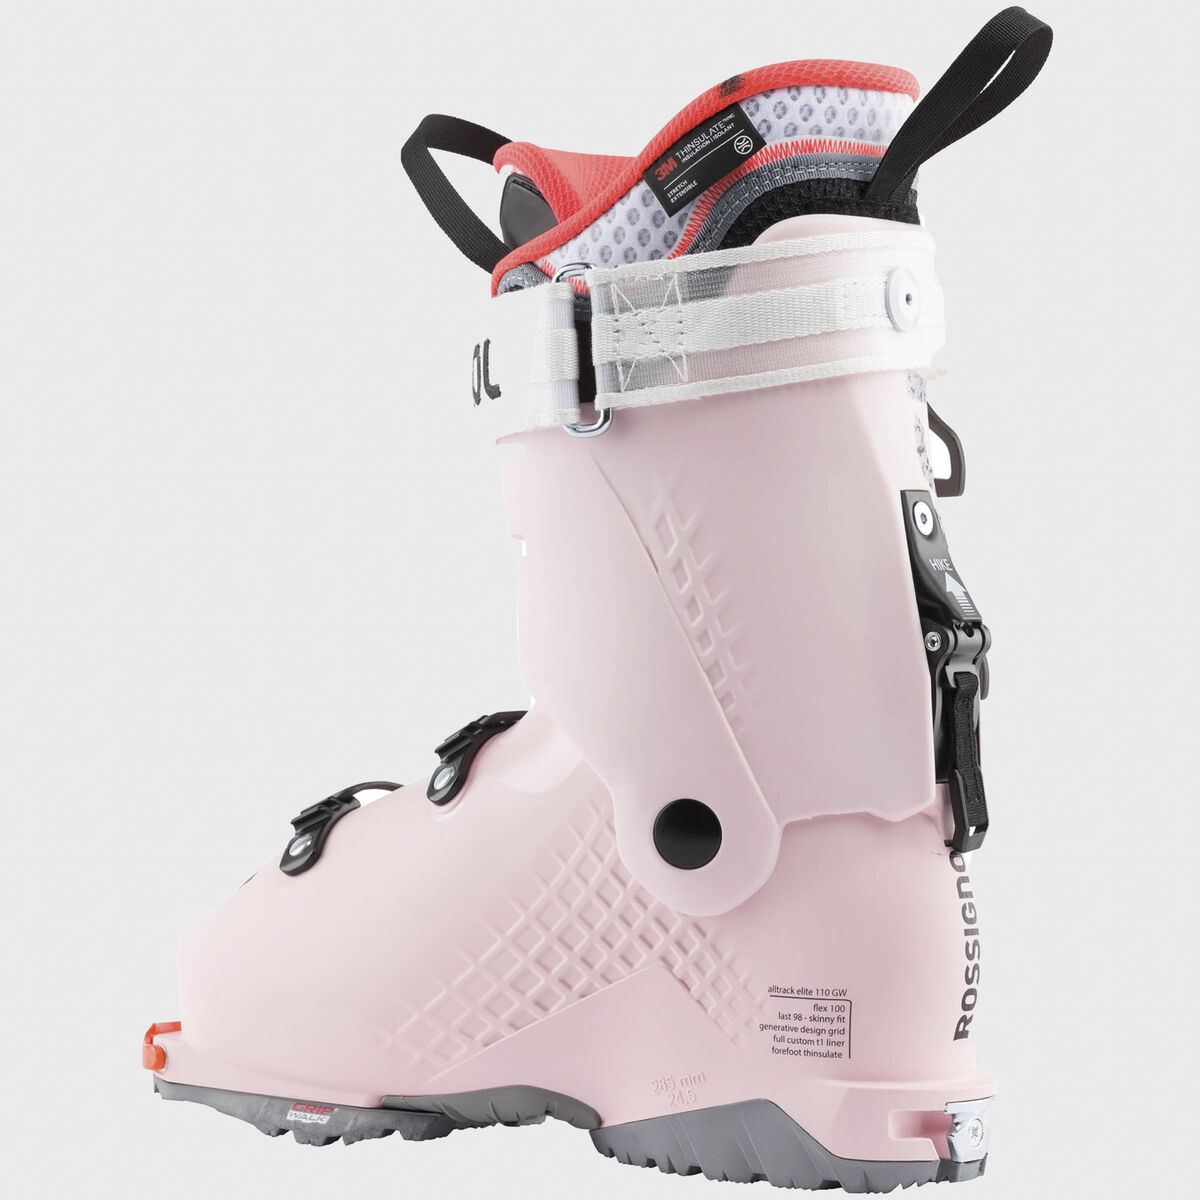 Women's Free Touring Ski Boots Alltrack Elite 110 LT W GW